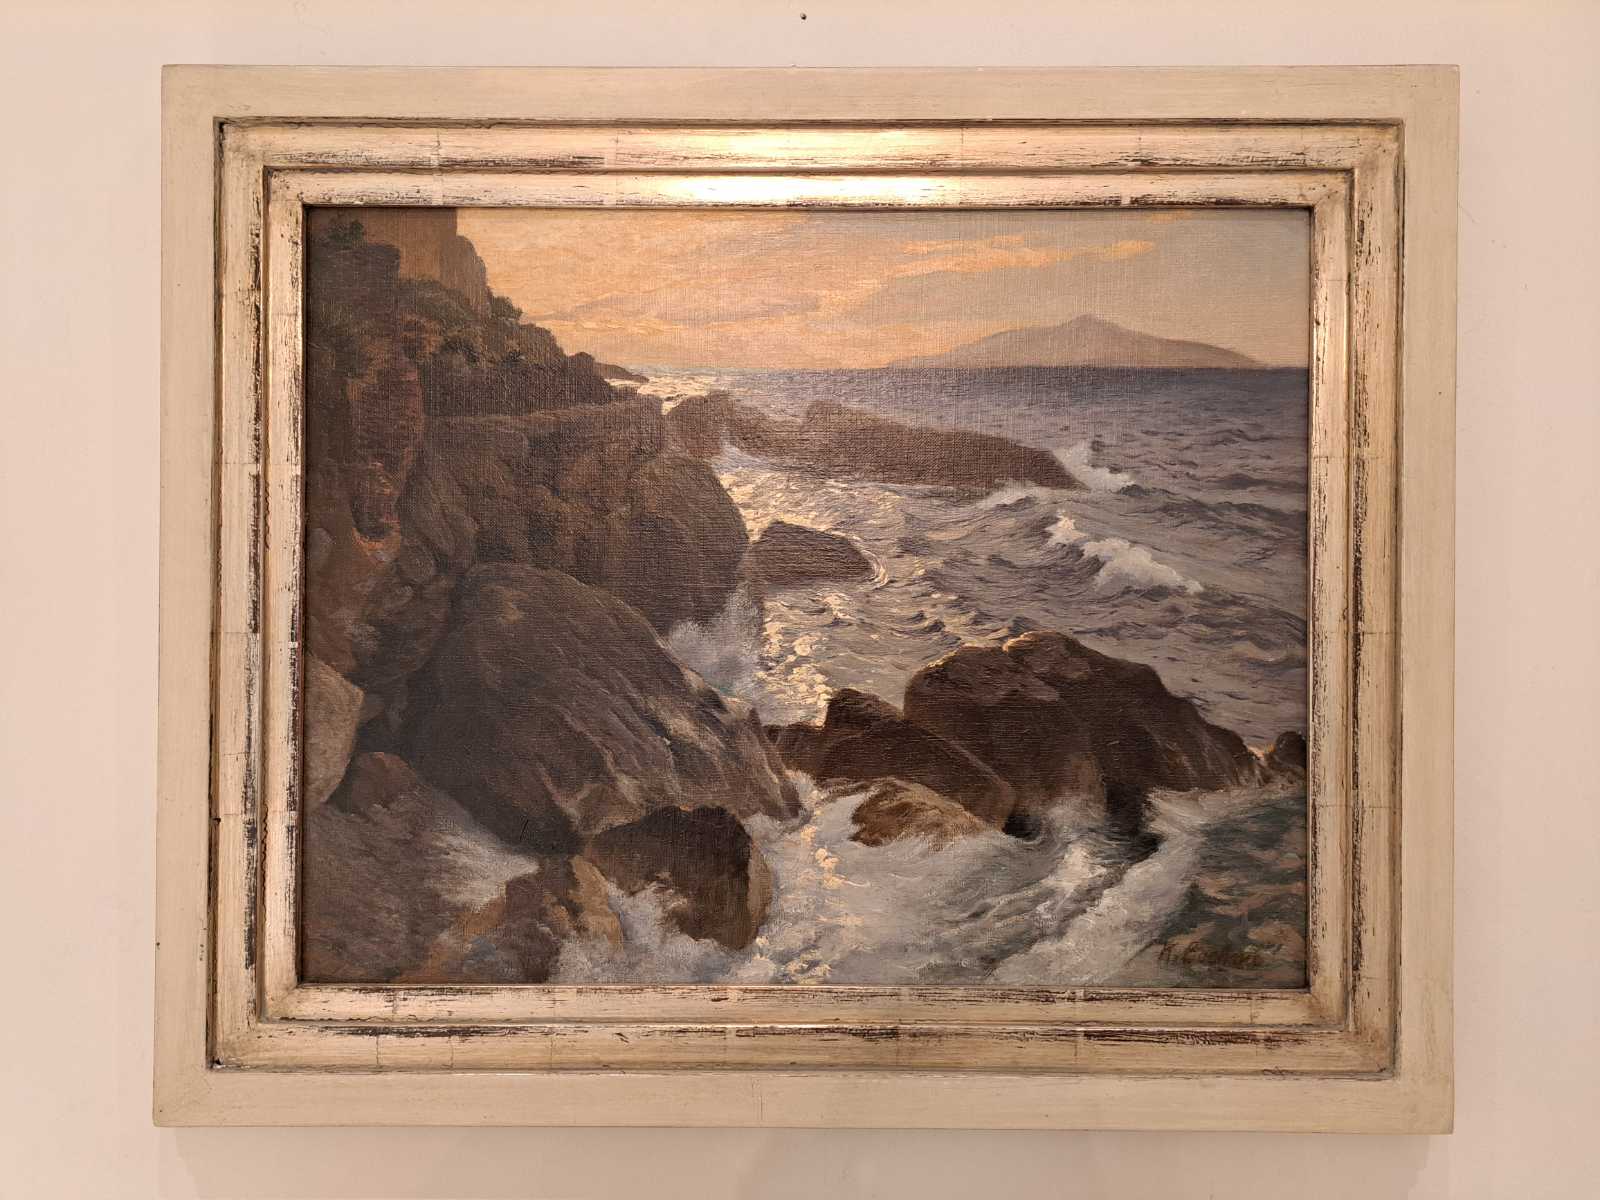 Ölbild Morgen auf Capri, von Karl Böhme, Frontalanischt.